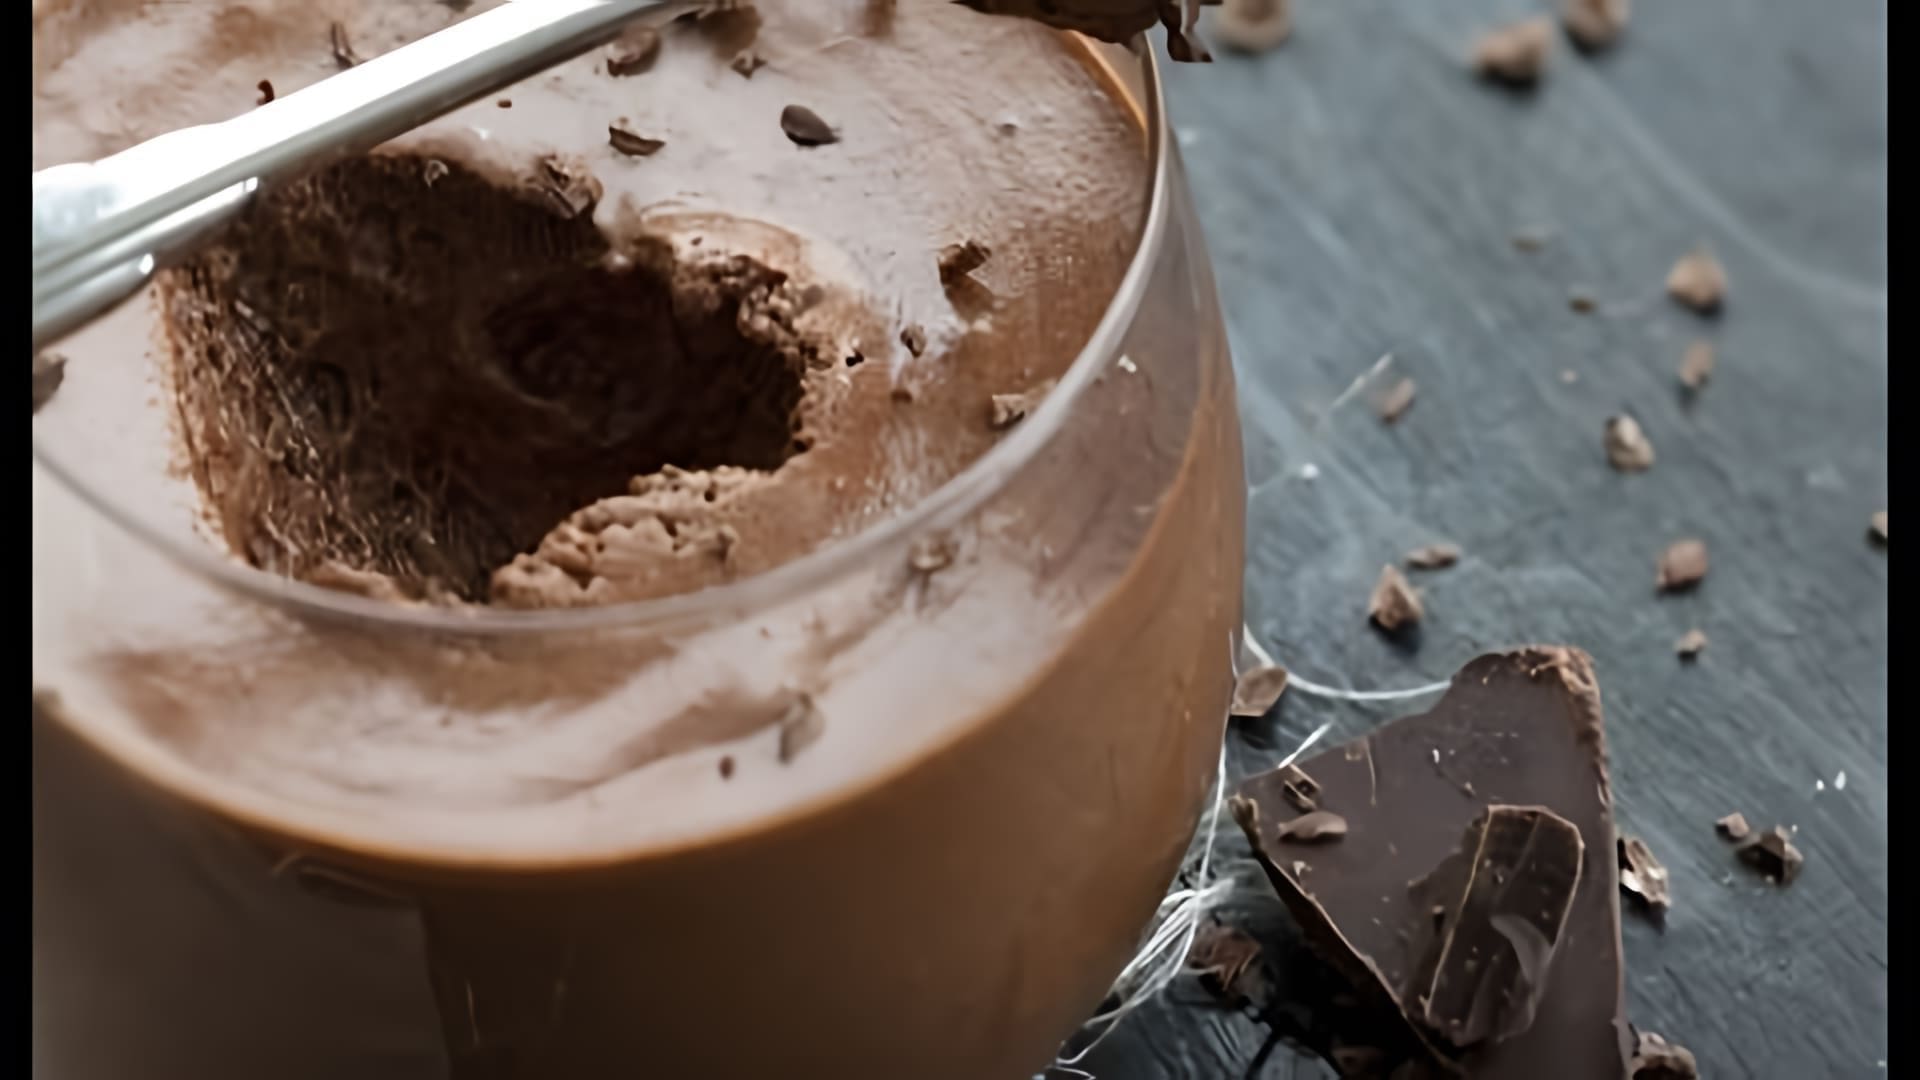 Юлия Высоцкая делится своим рецептом шоколадного мусса, который получается нежным и вкусным